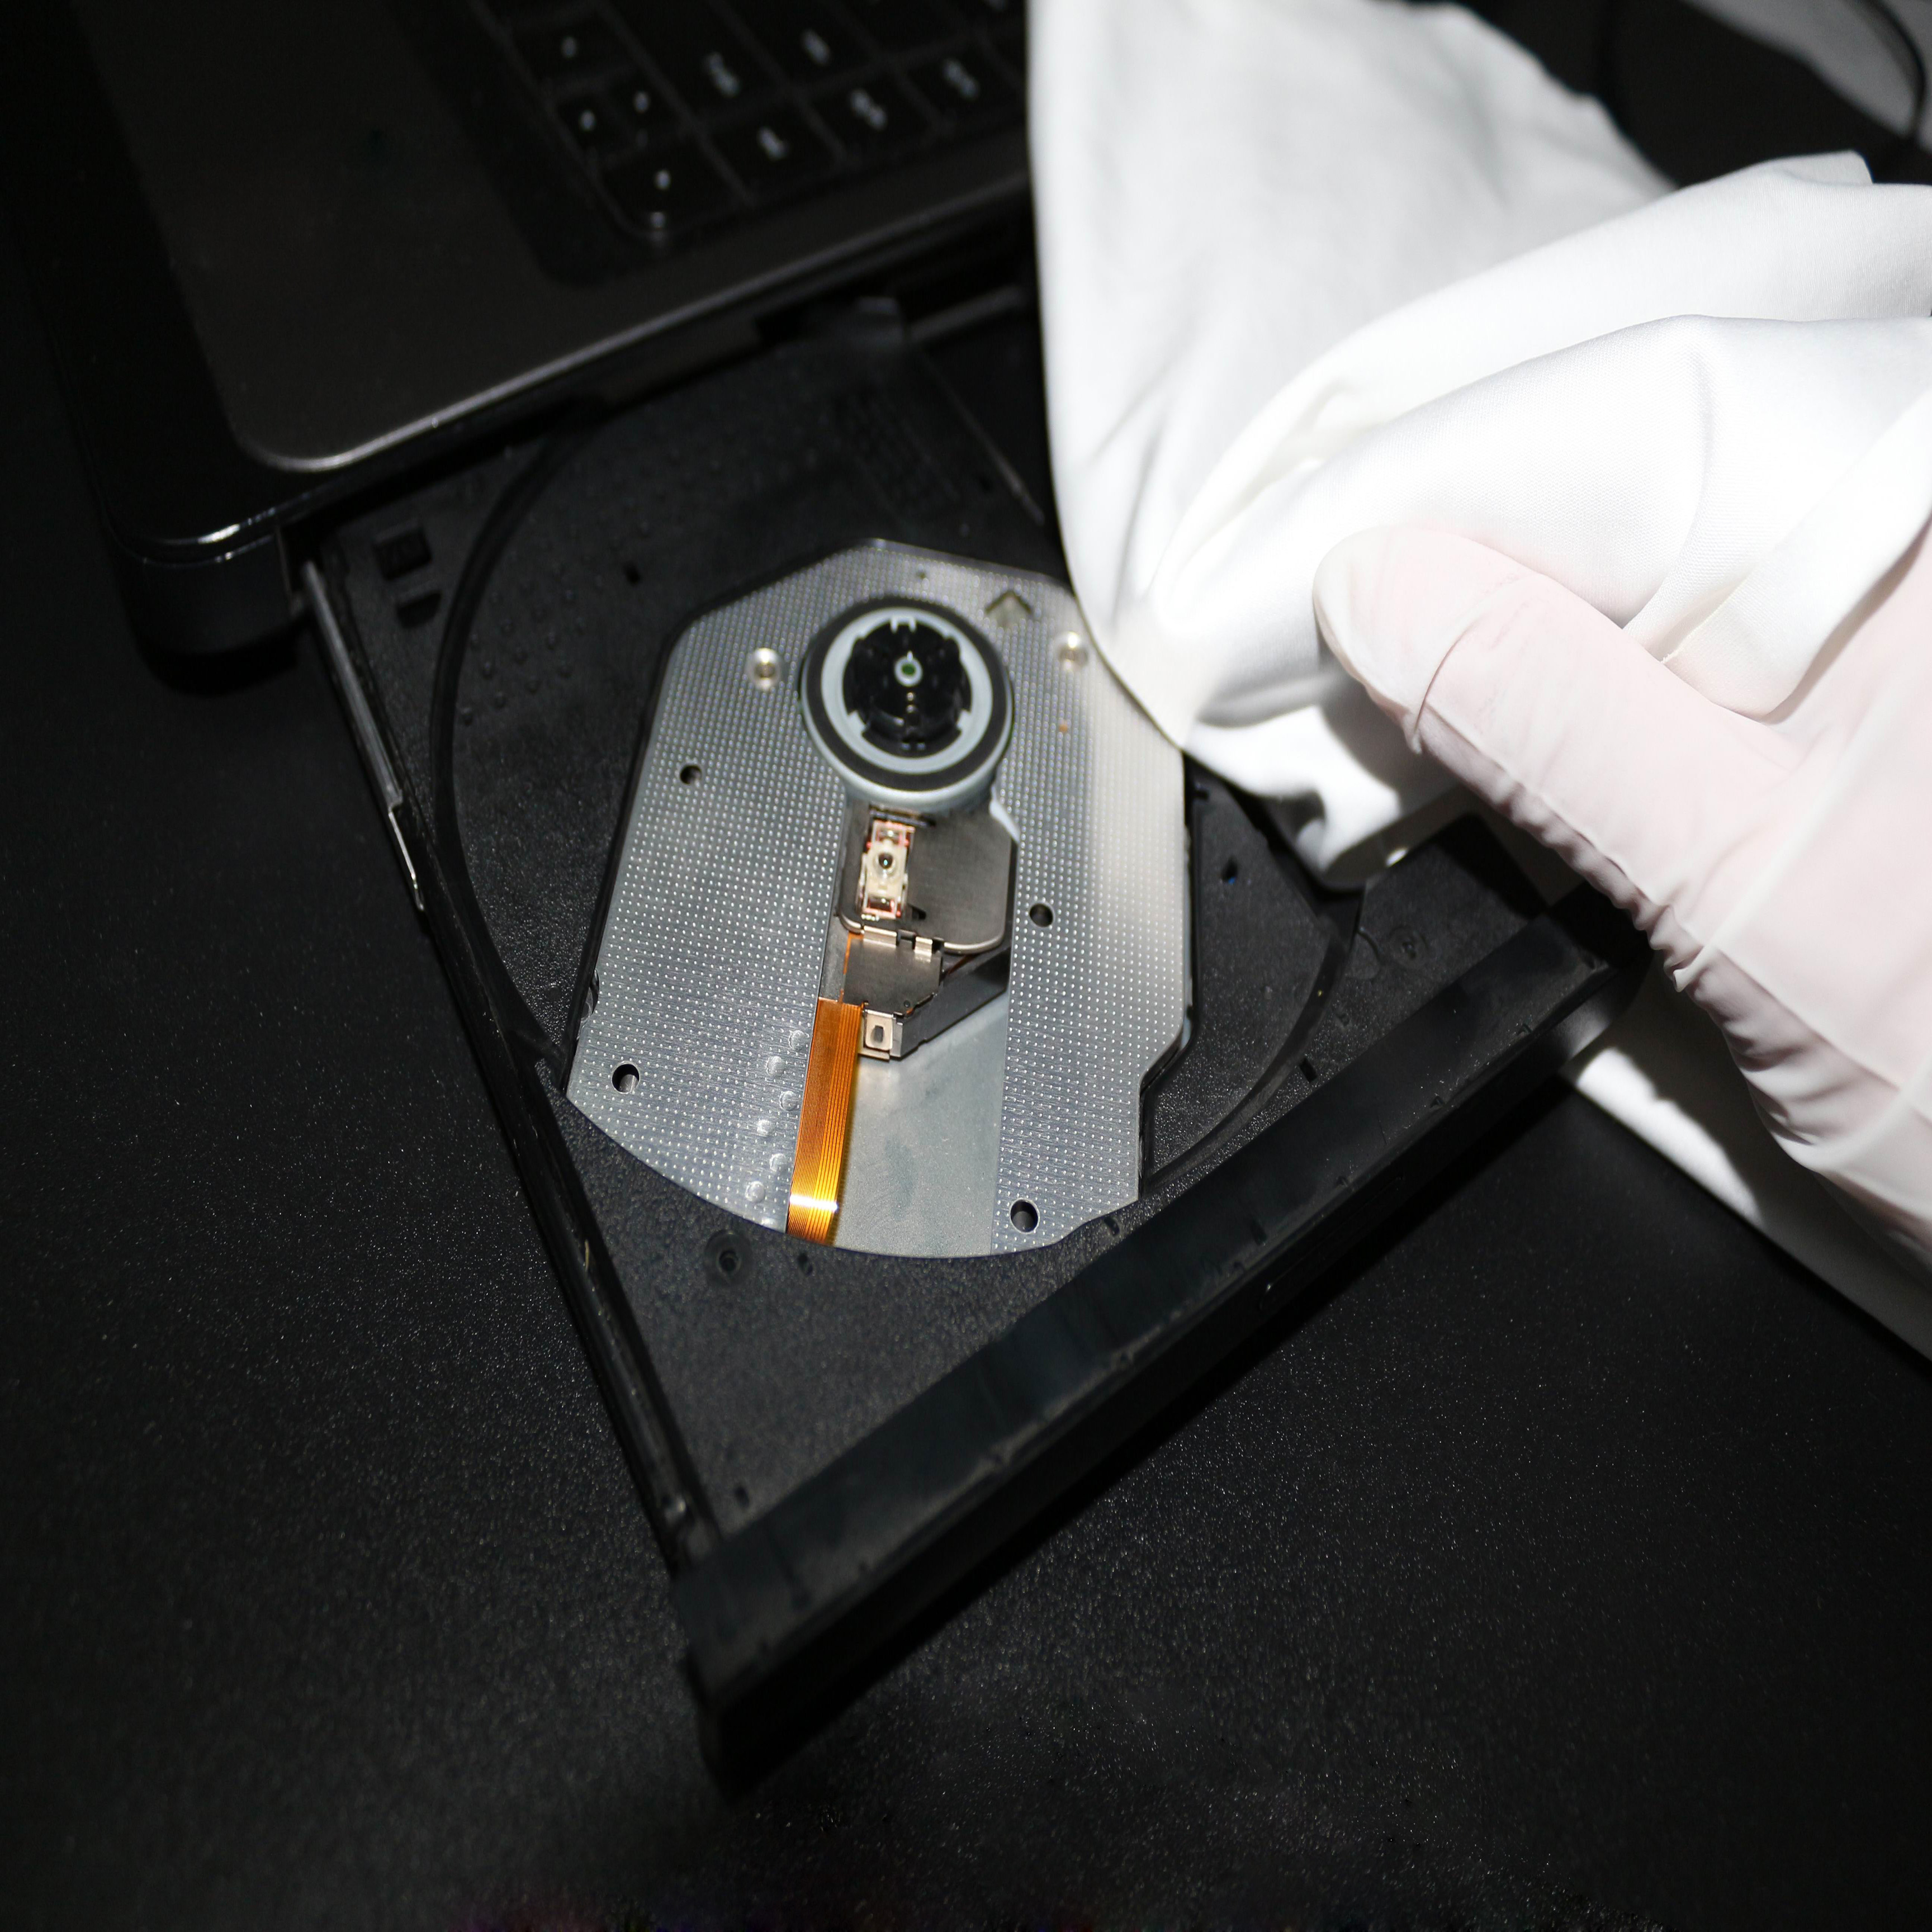 Tergicristallo in microfibra di nylon Bordo sigillato ad ultrasuoni
